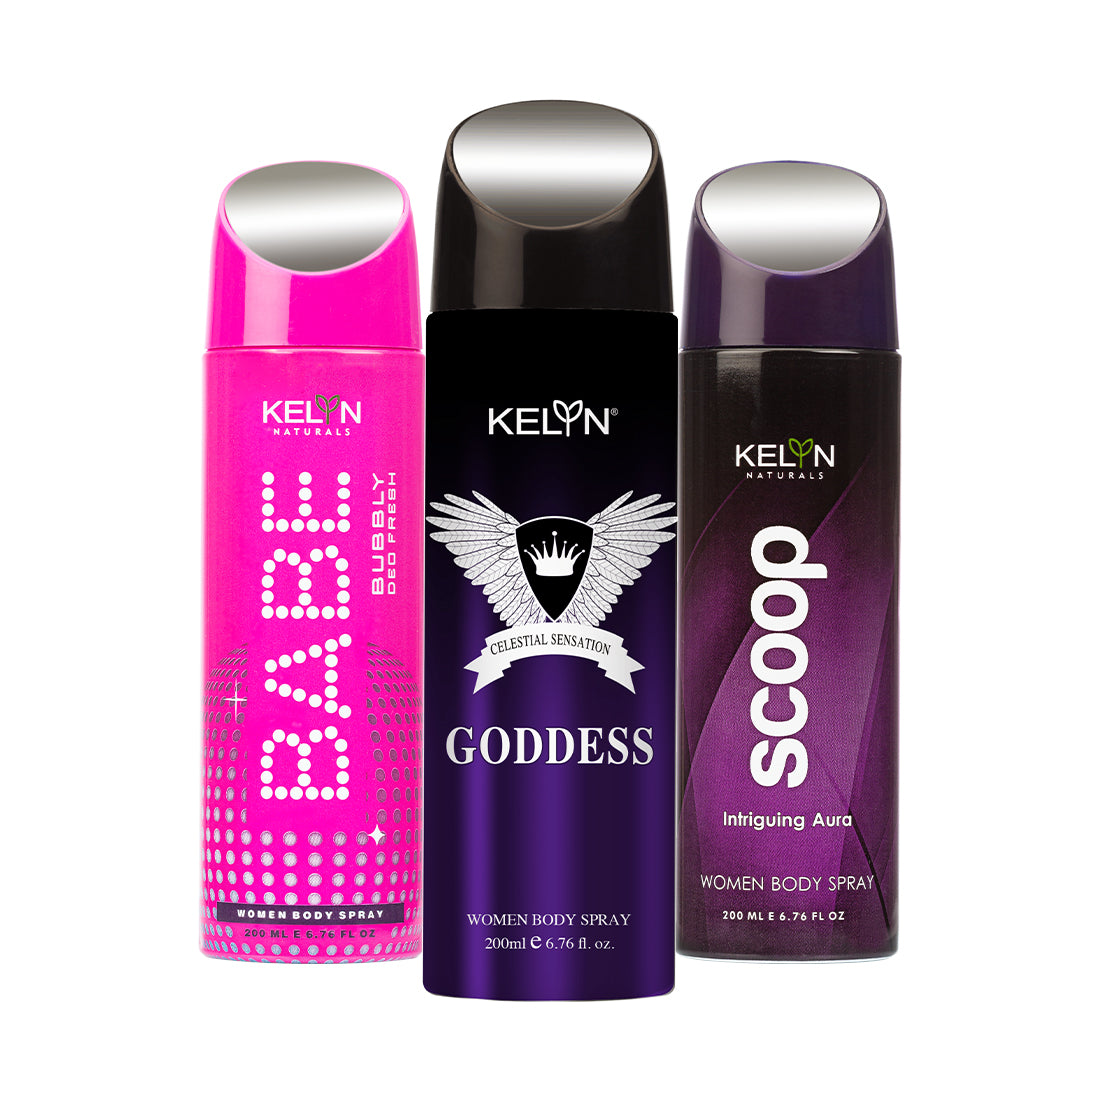 Goddess, Babe, Scoop Deodorant for Women Body Spray (Pack of 3) 200 ml each